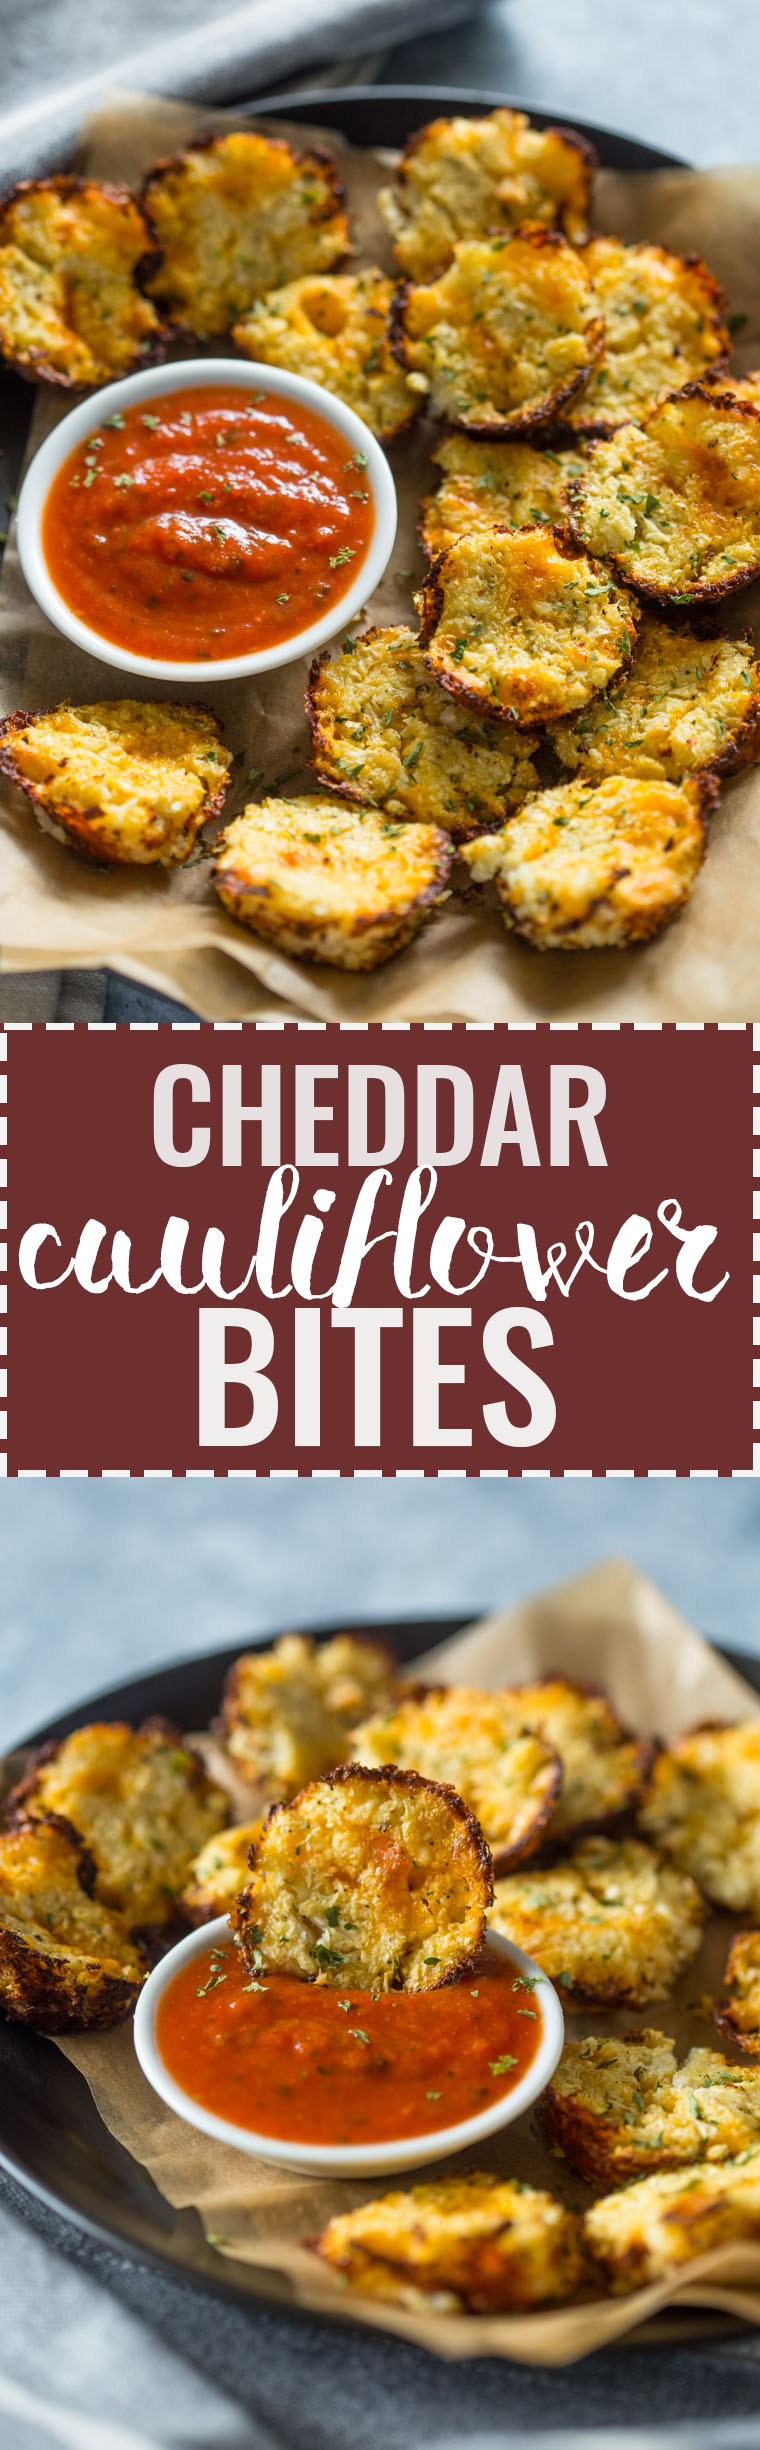 3 Ingredient Baked Cheddar Cauliflower Bites